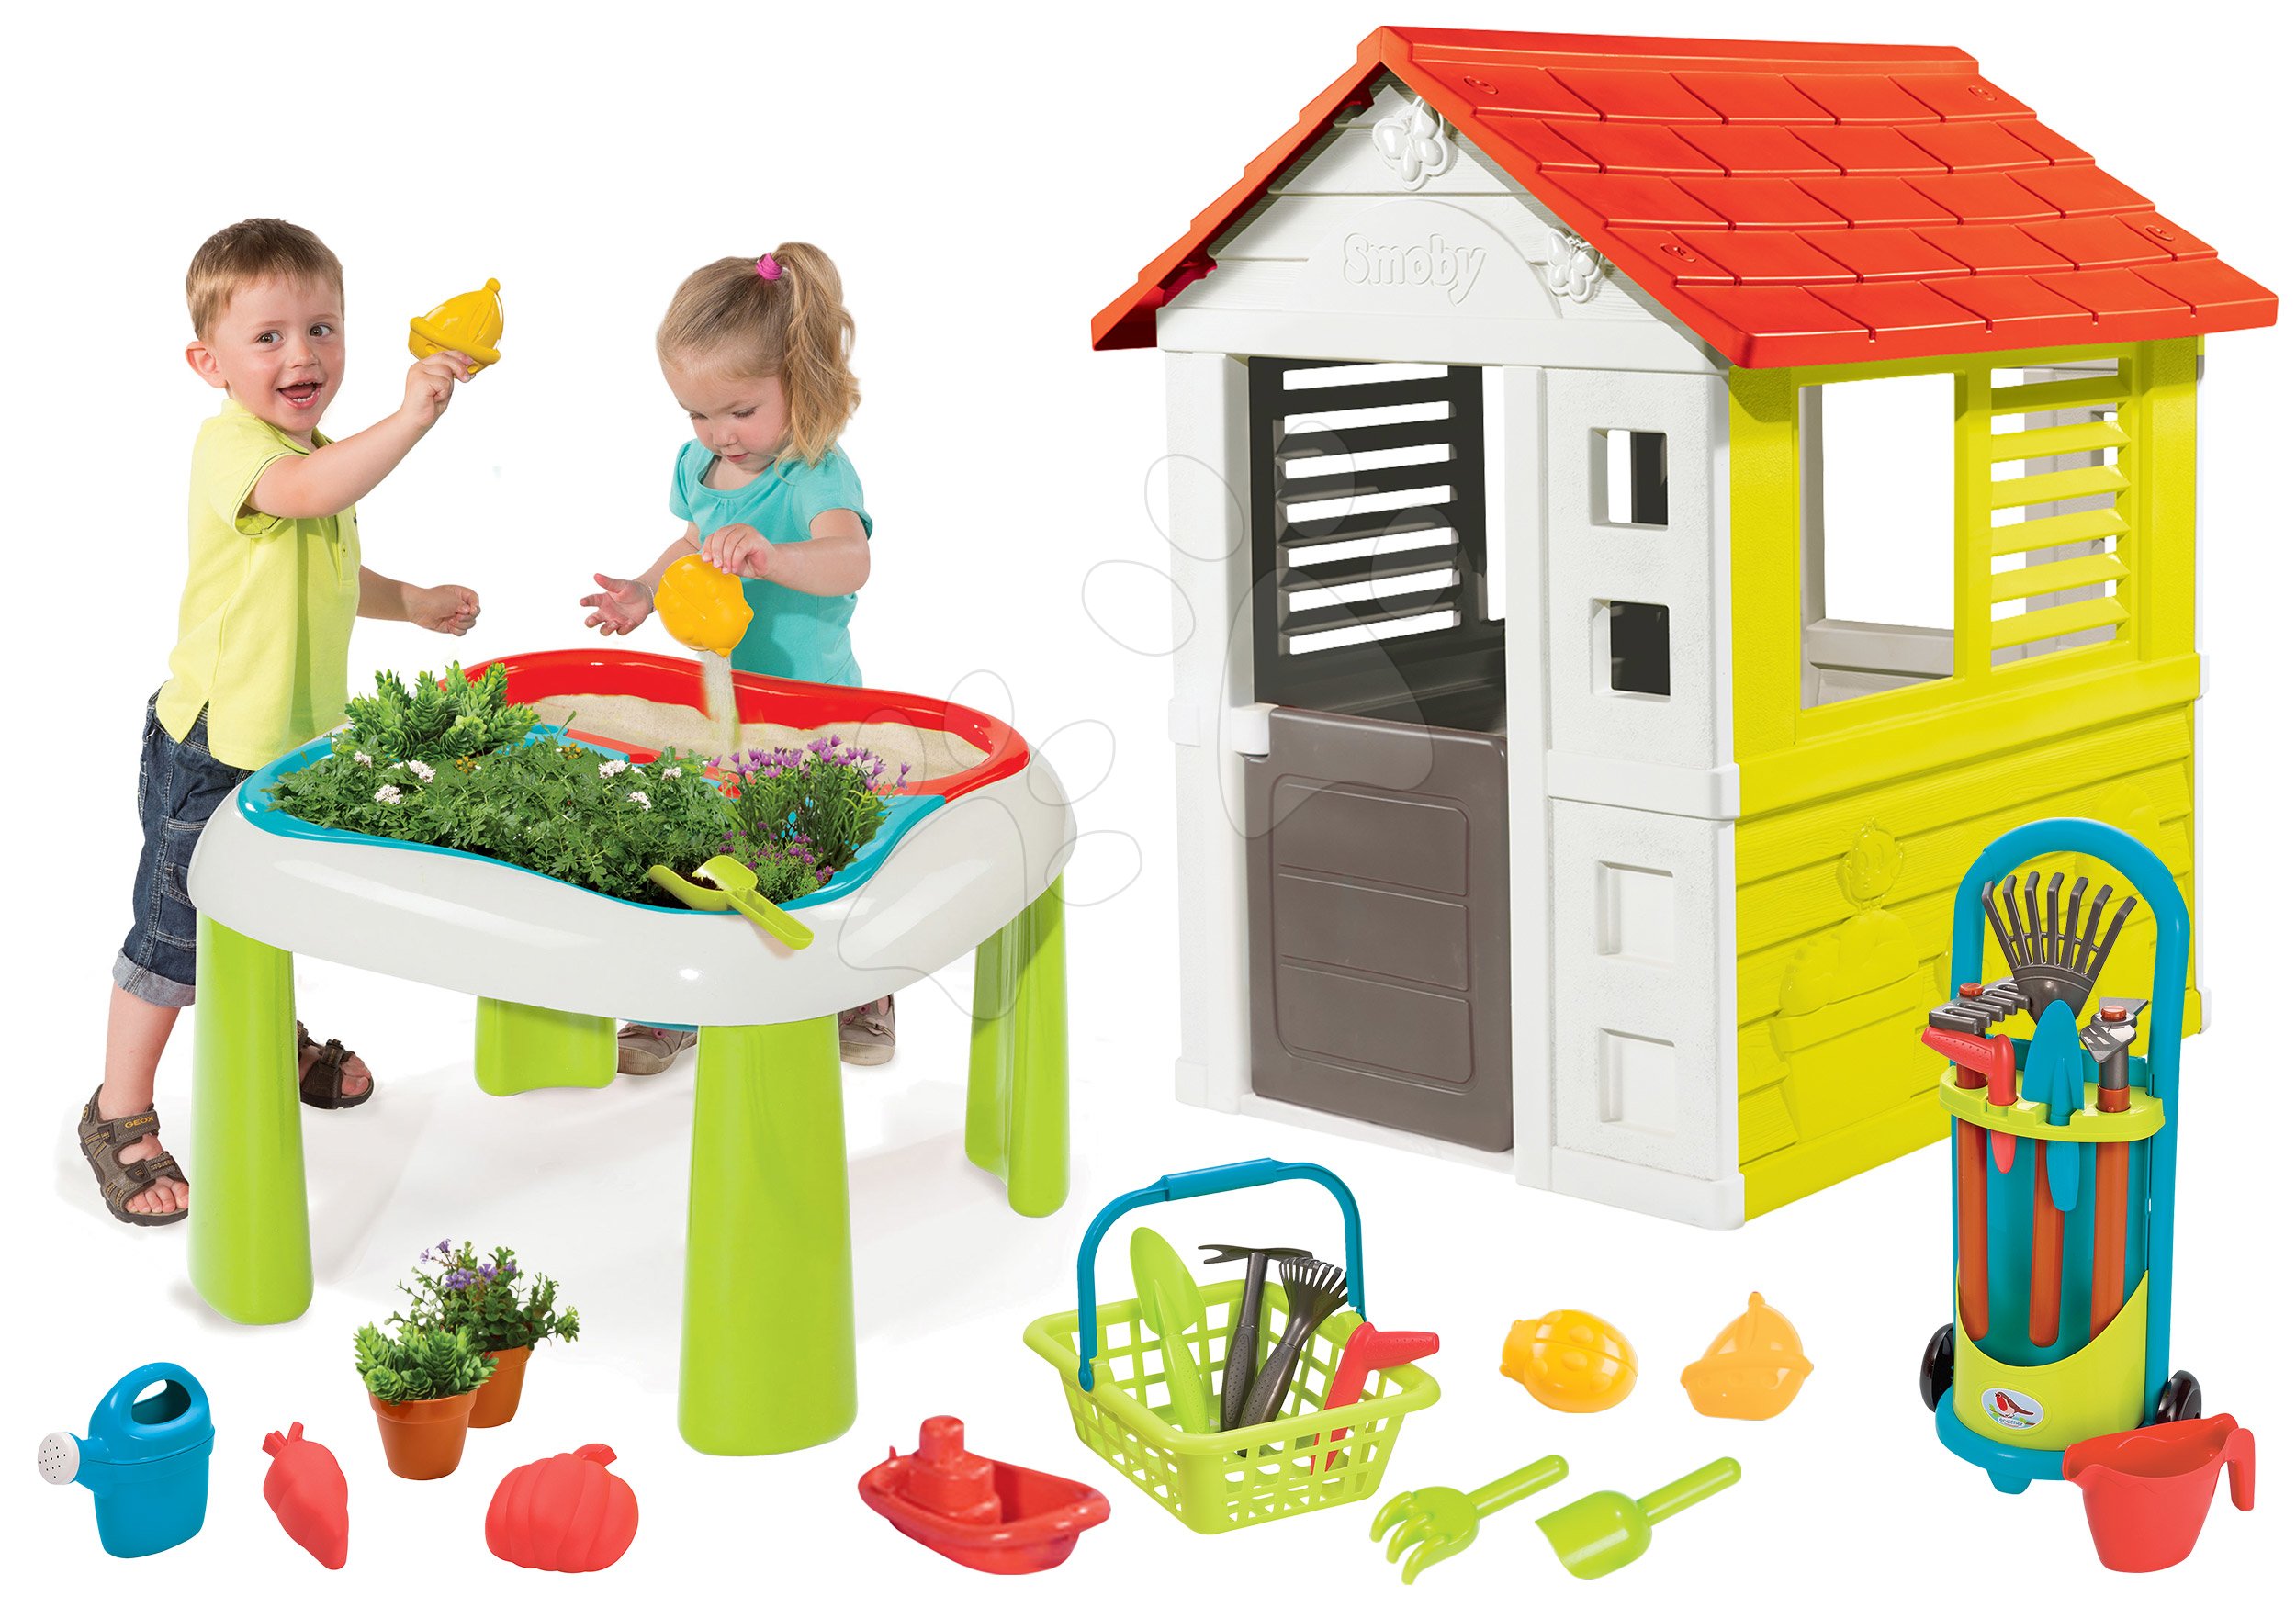 Detský záhradný nábytok sety - Set stôl Záhradník De Jardinage 2v1 Smoby dvojdielny so záhradkou a domček Lovely a vozík s náradím